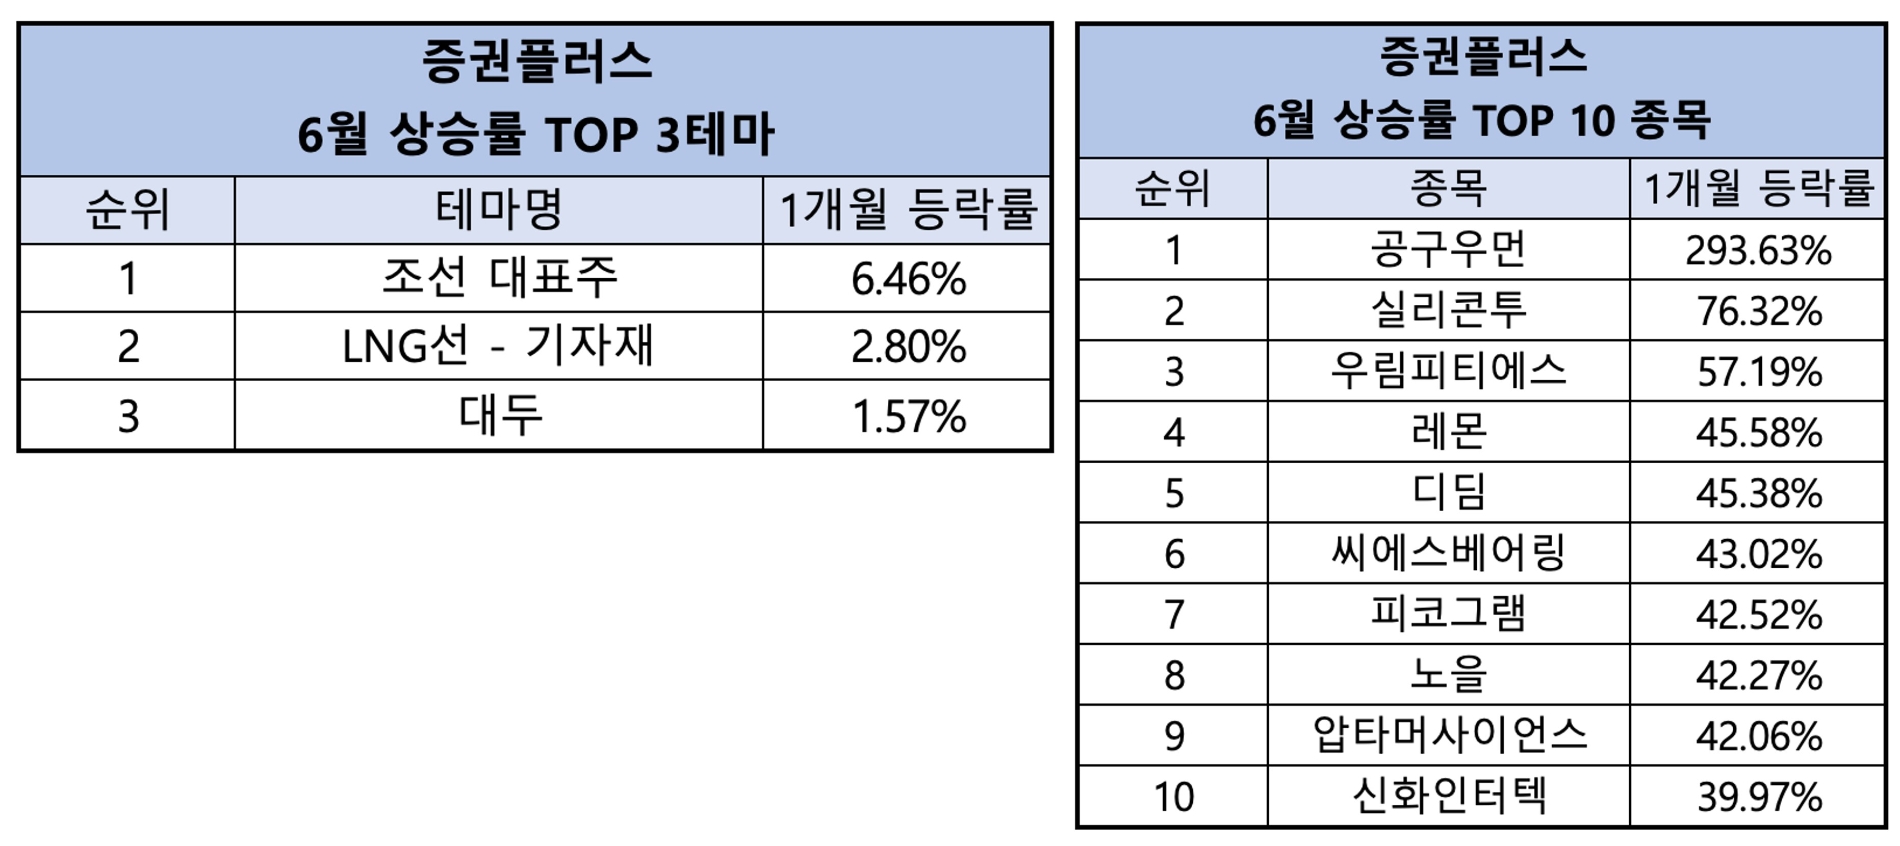 증권플러스 6월 ‘조선주’ 테마 약진…가장 많이 오른 종목은 ‘공구우먼’